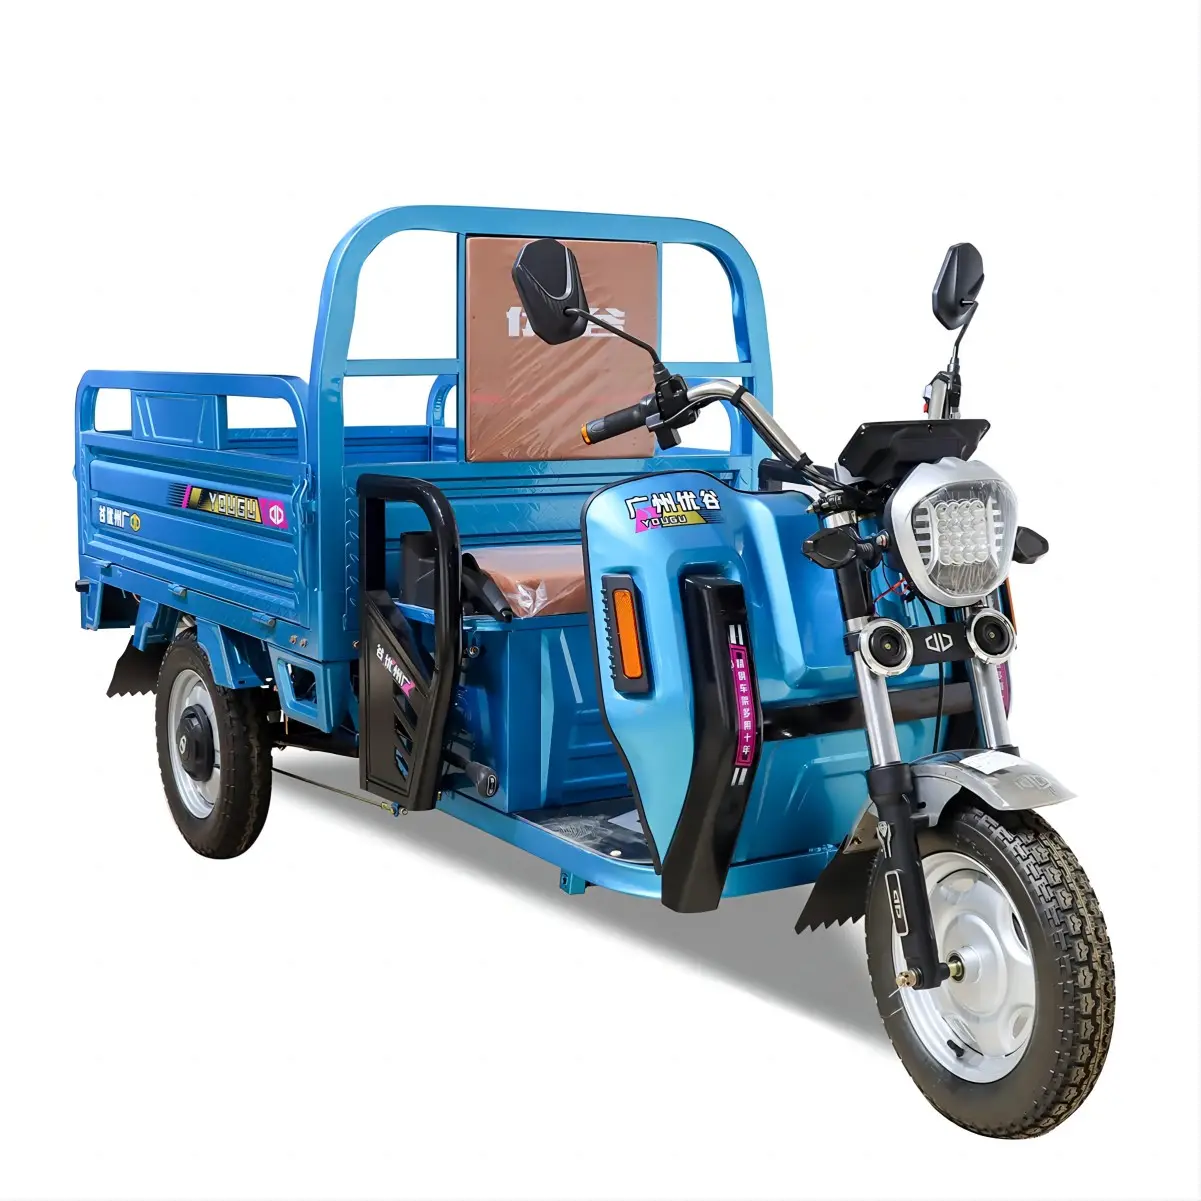 Производитель автомобилей LUBEI, 1,3 м/1,5 м, 800 Вт/1000 Вт, 60 В, мощный Электрический трехколесный велосипед, трехколесный электрический скутер, мотоцикл